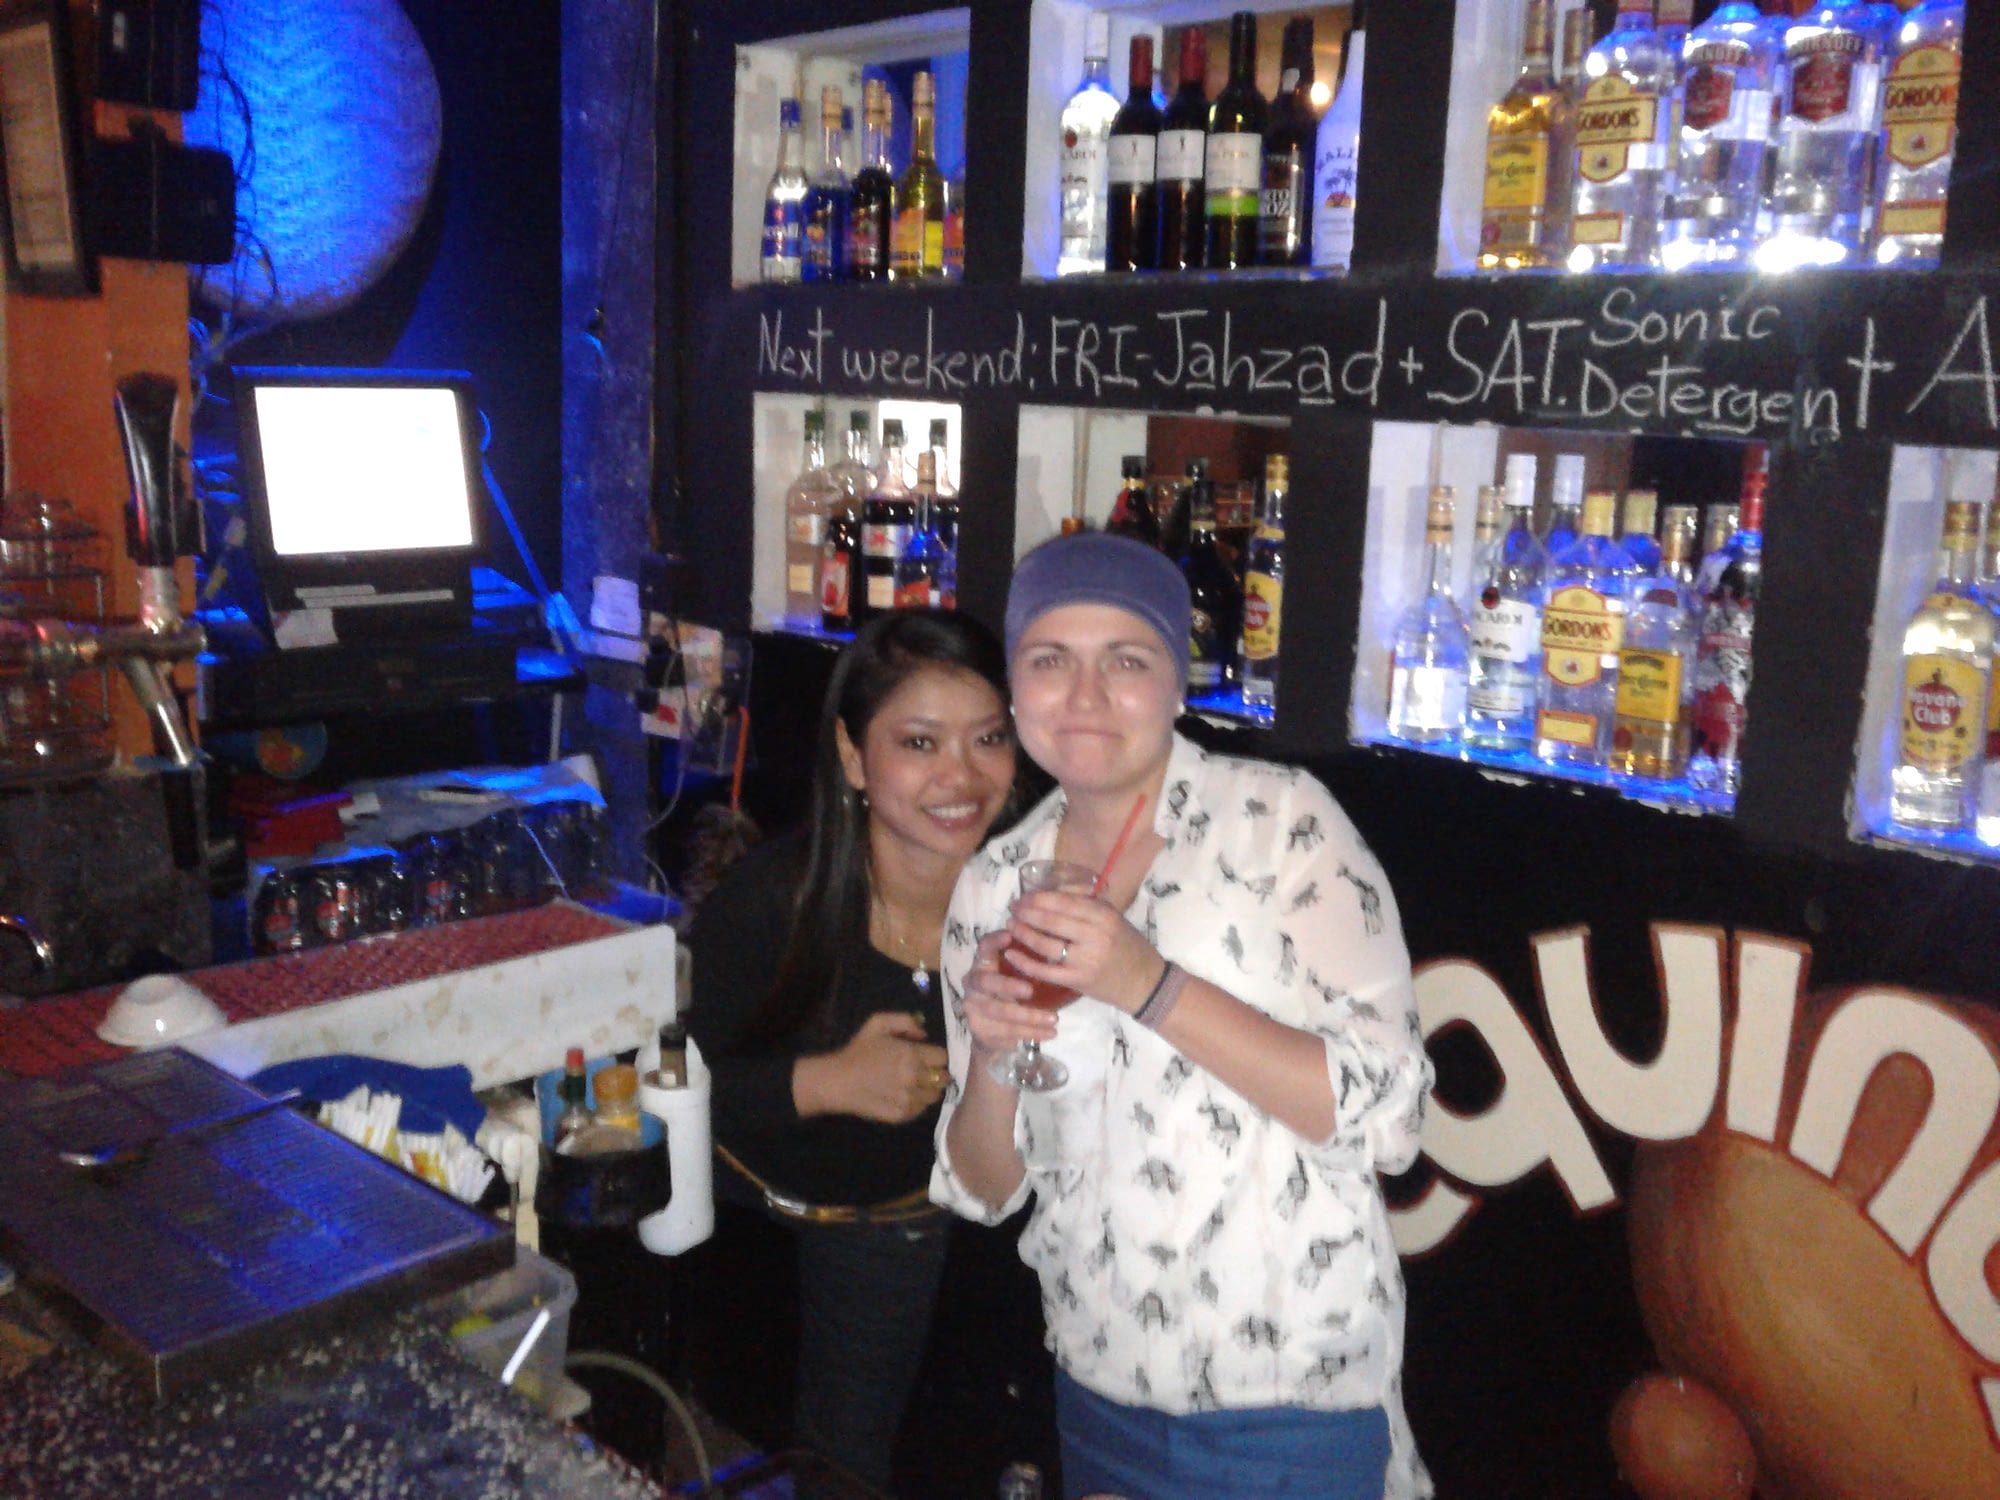 Nyny and Russian tourist at upstairs bar at Equinox.